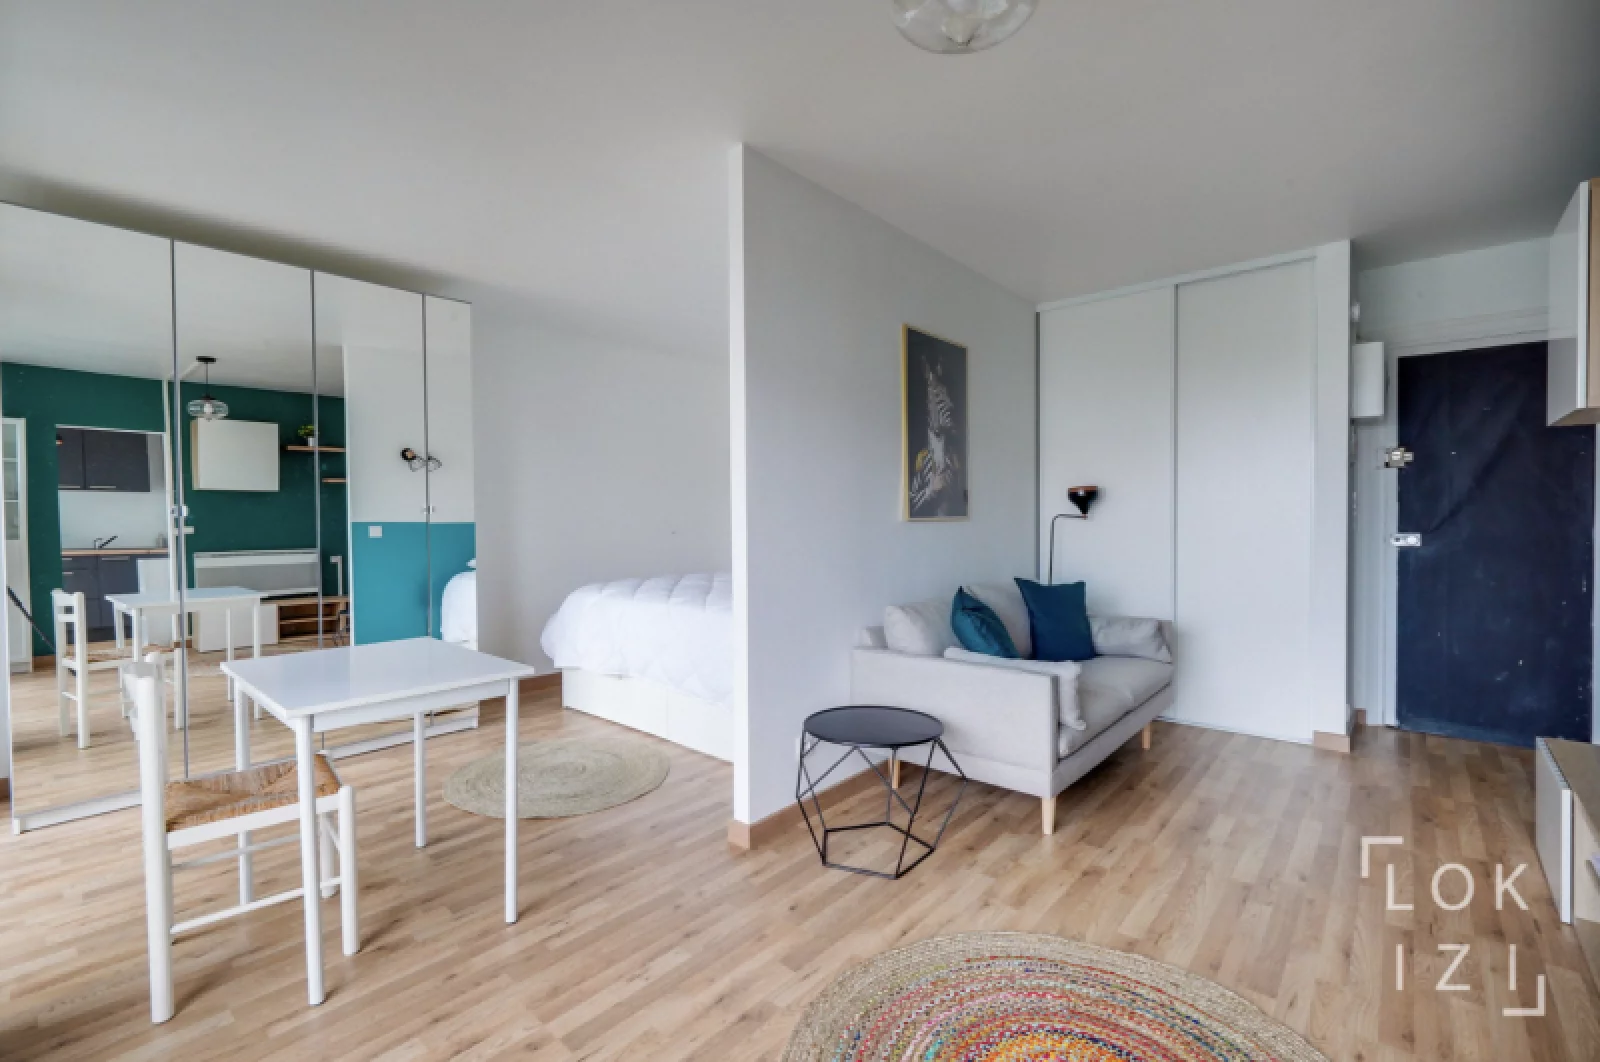 Location appartement T1bis meublé 32m² (Bordeaux - Saint Jean)